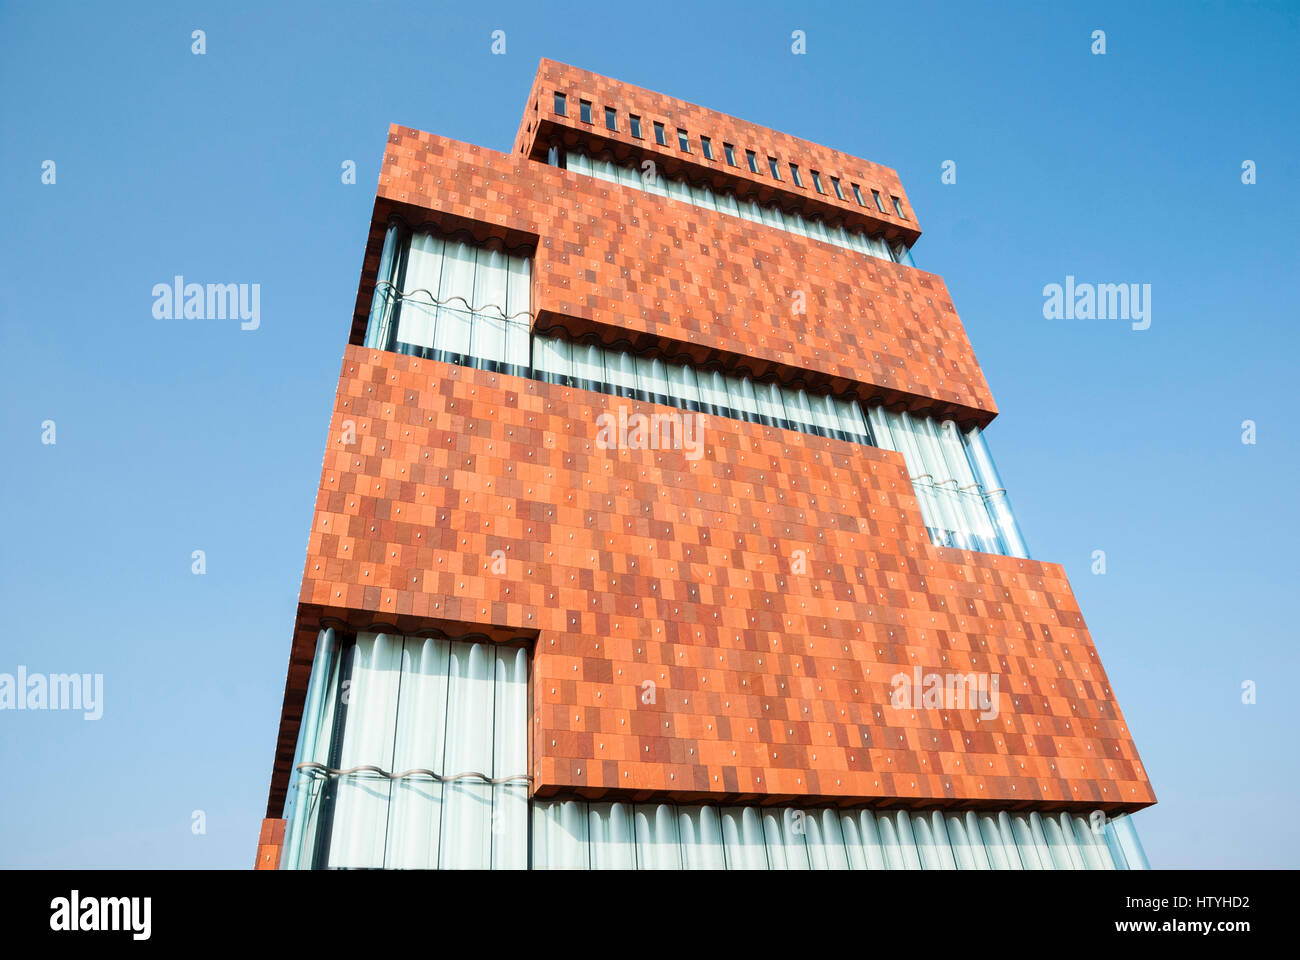 Anversa, Belgio - 17 Marzo: Museo aan ser Stroom, situato lungo il fiume Schelda, progettato da Neutelings Riedijk Architects è la nuova aggiunta a Foto Stock